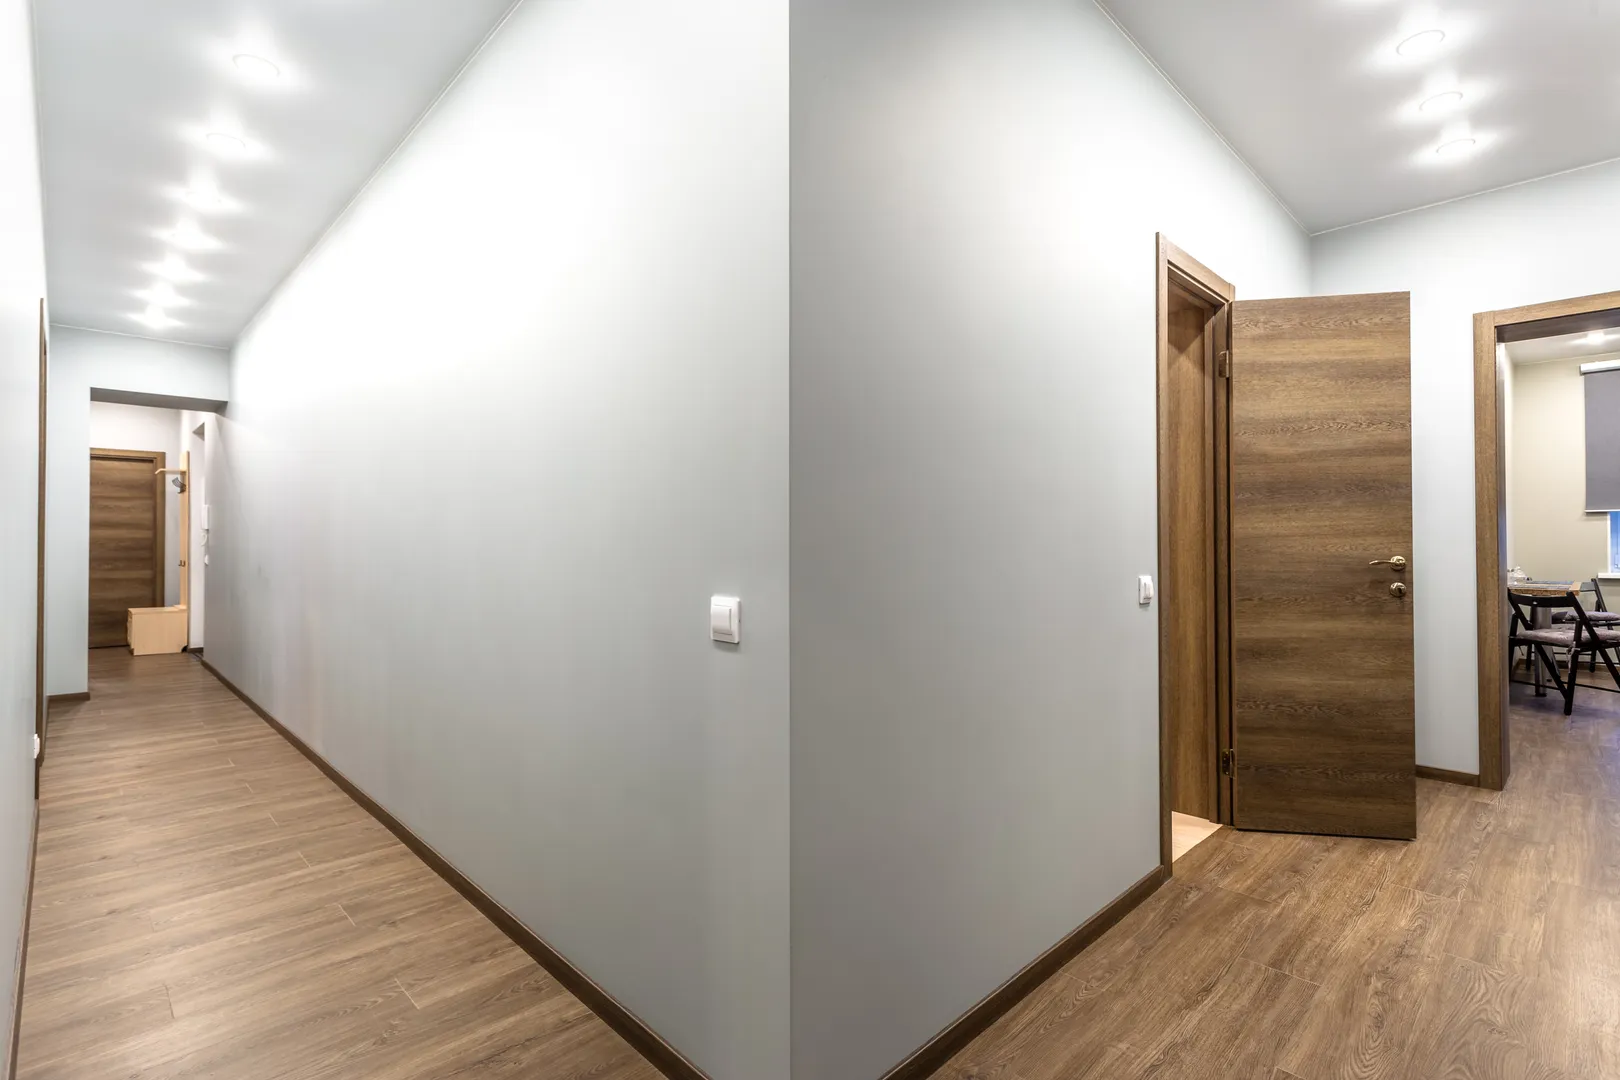 Коридоры квартиры. Слева коридор у входной двери, справа коридор у кухни и ванной комнаты.